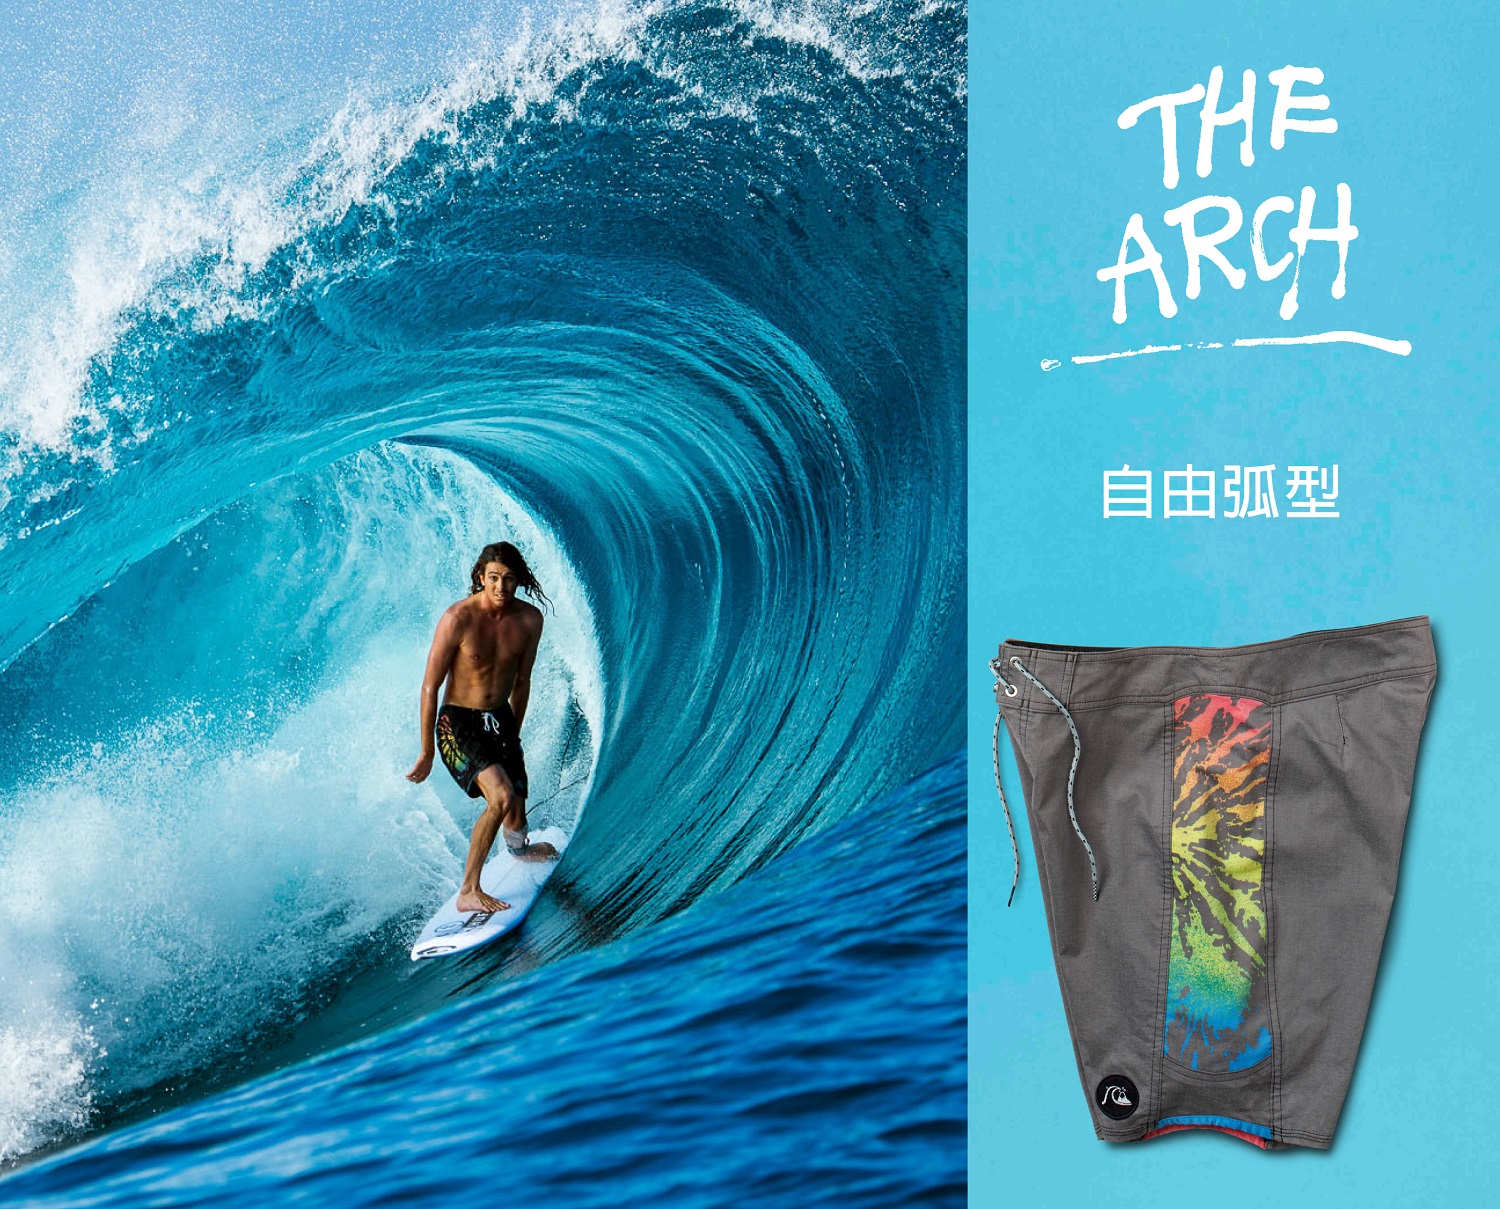 THE ARCH 衝浪褲 褲管弧形剪裁發揮水上最大活動性